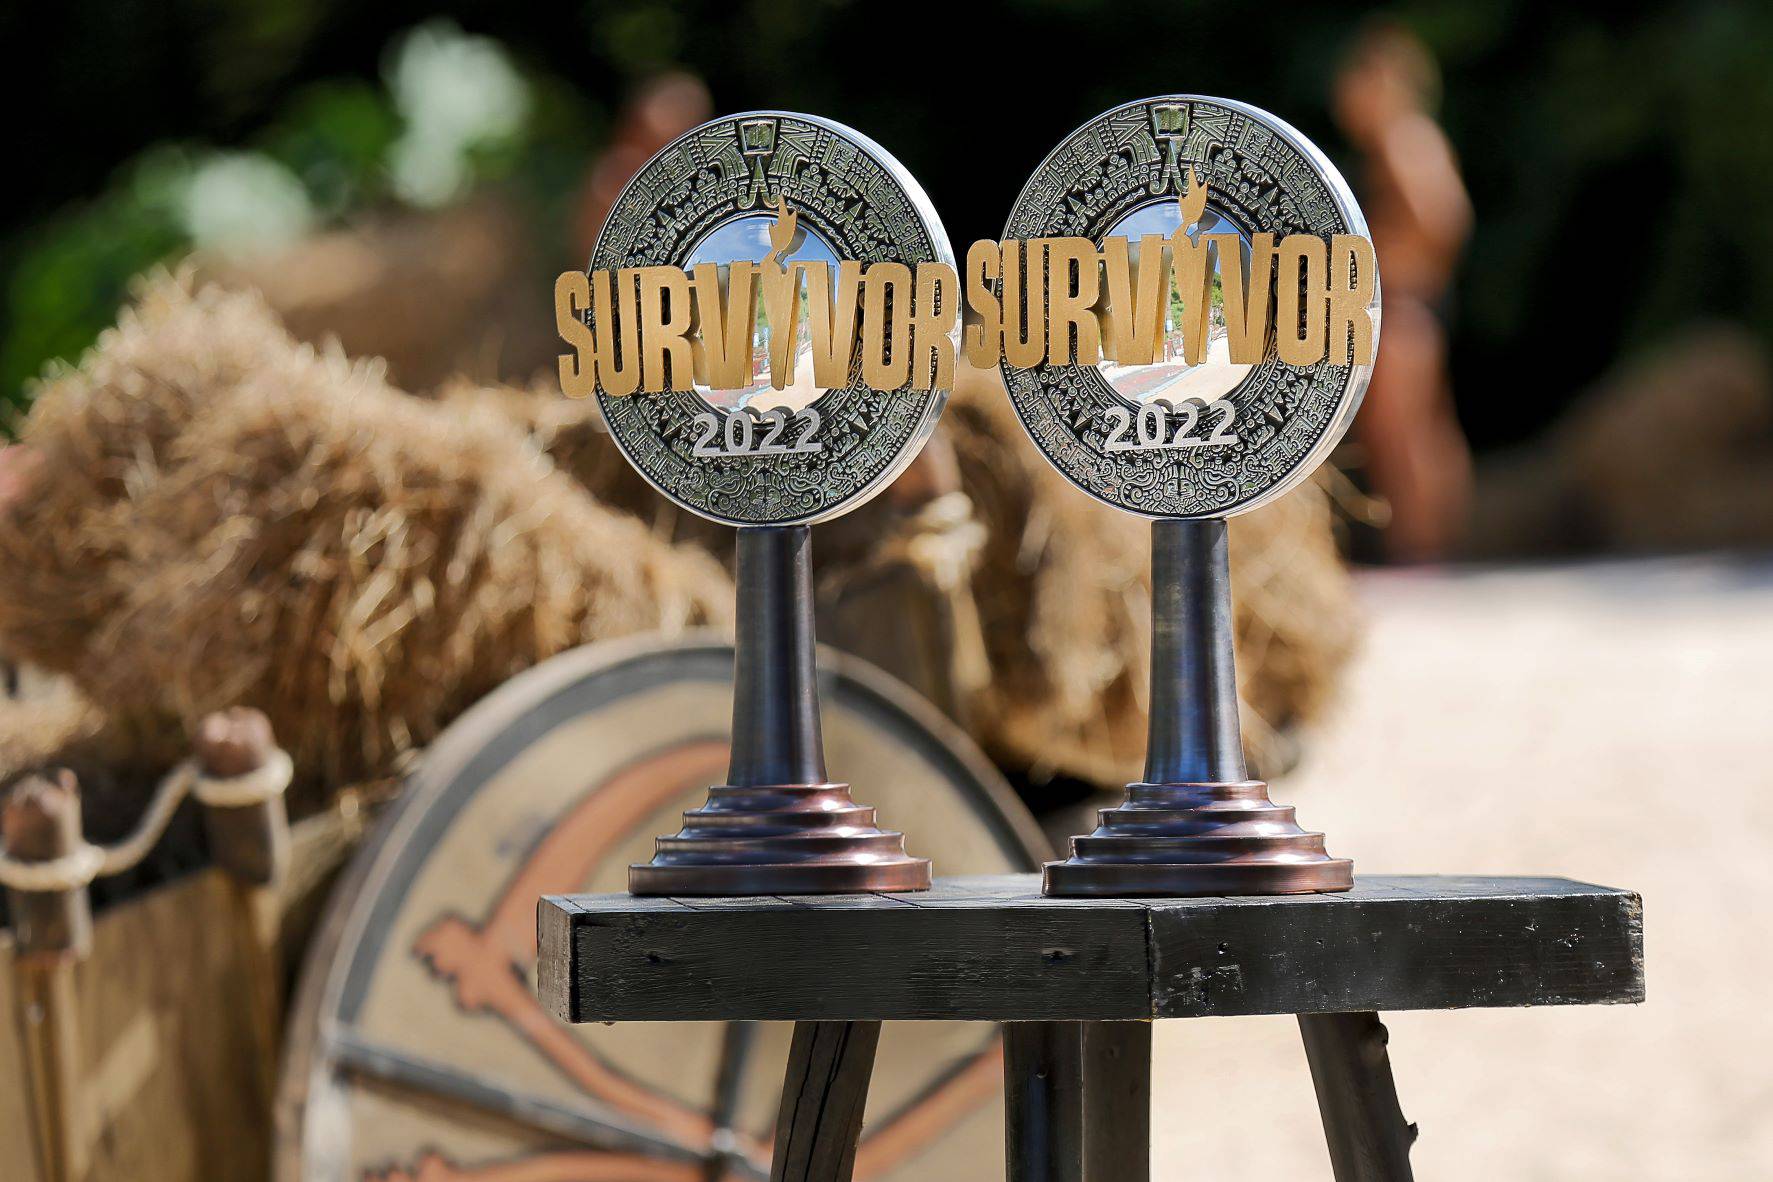 Finale 'Survivora', kandidate čeka najteži izazov: Evo koji iznos će dobiti pobjednik showa